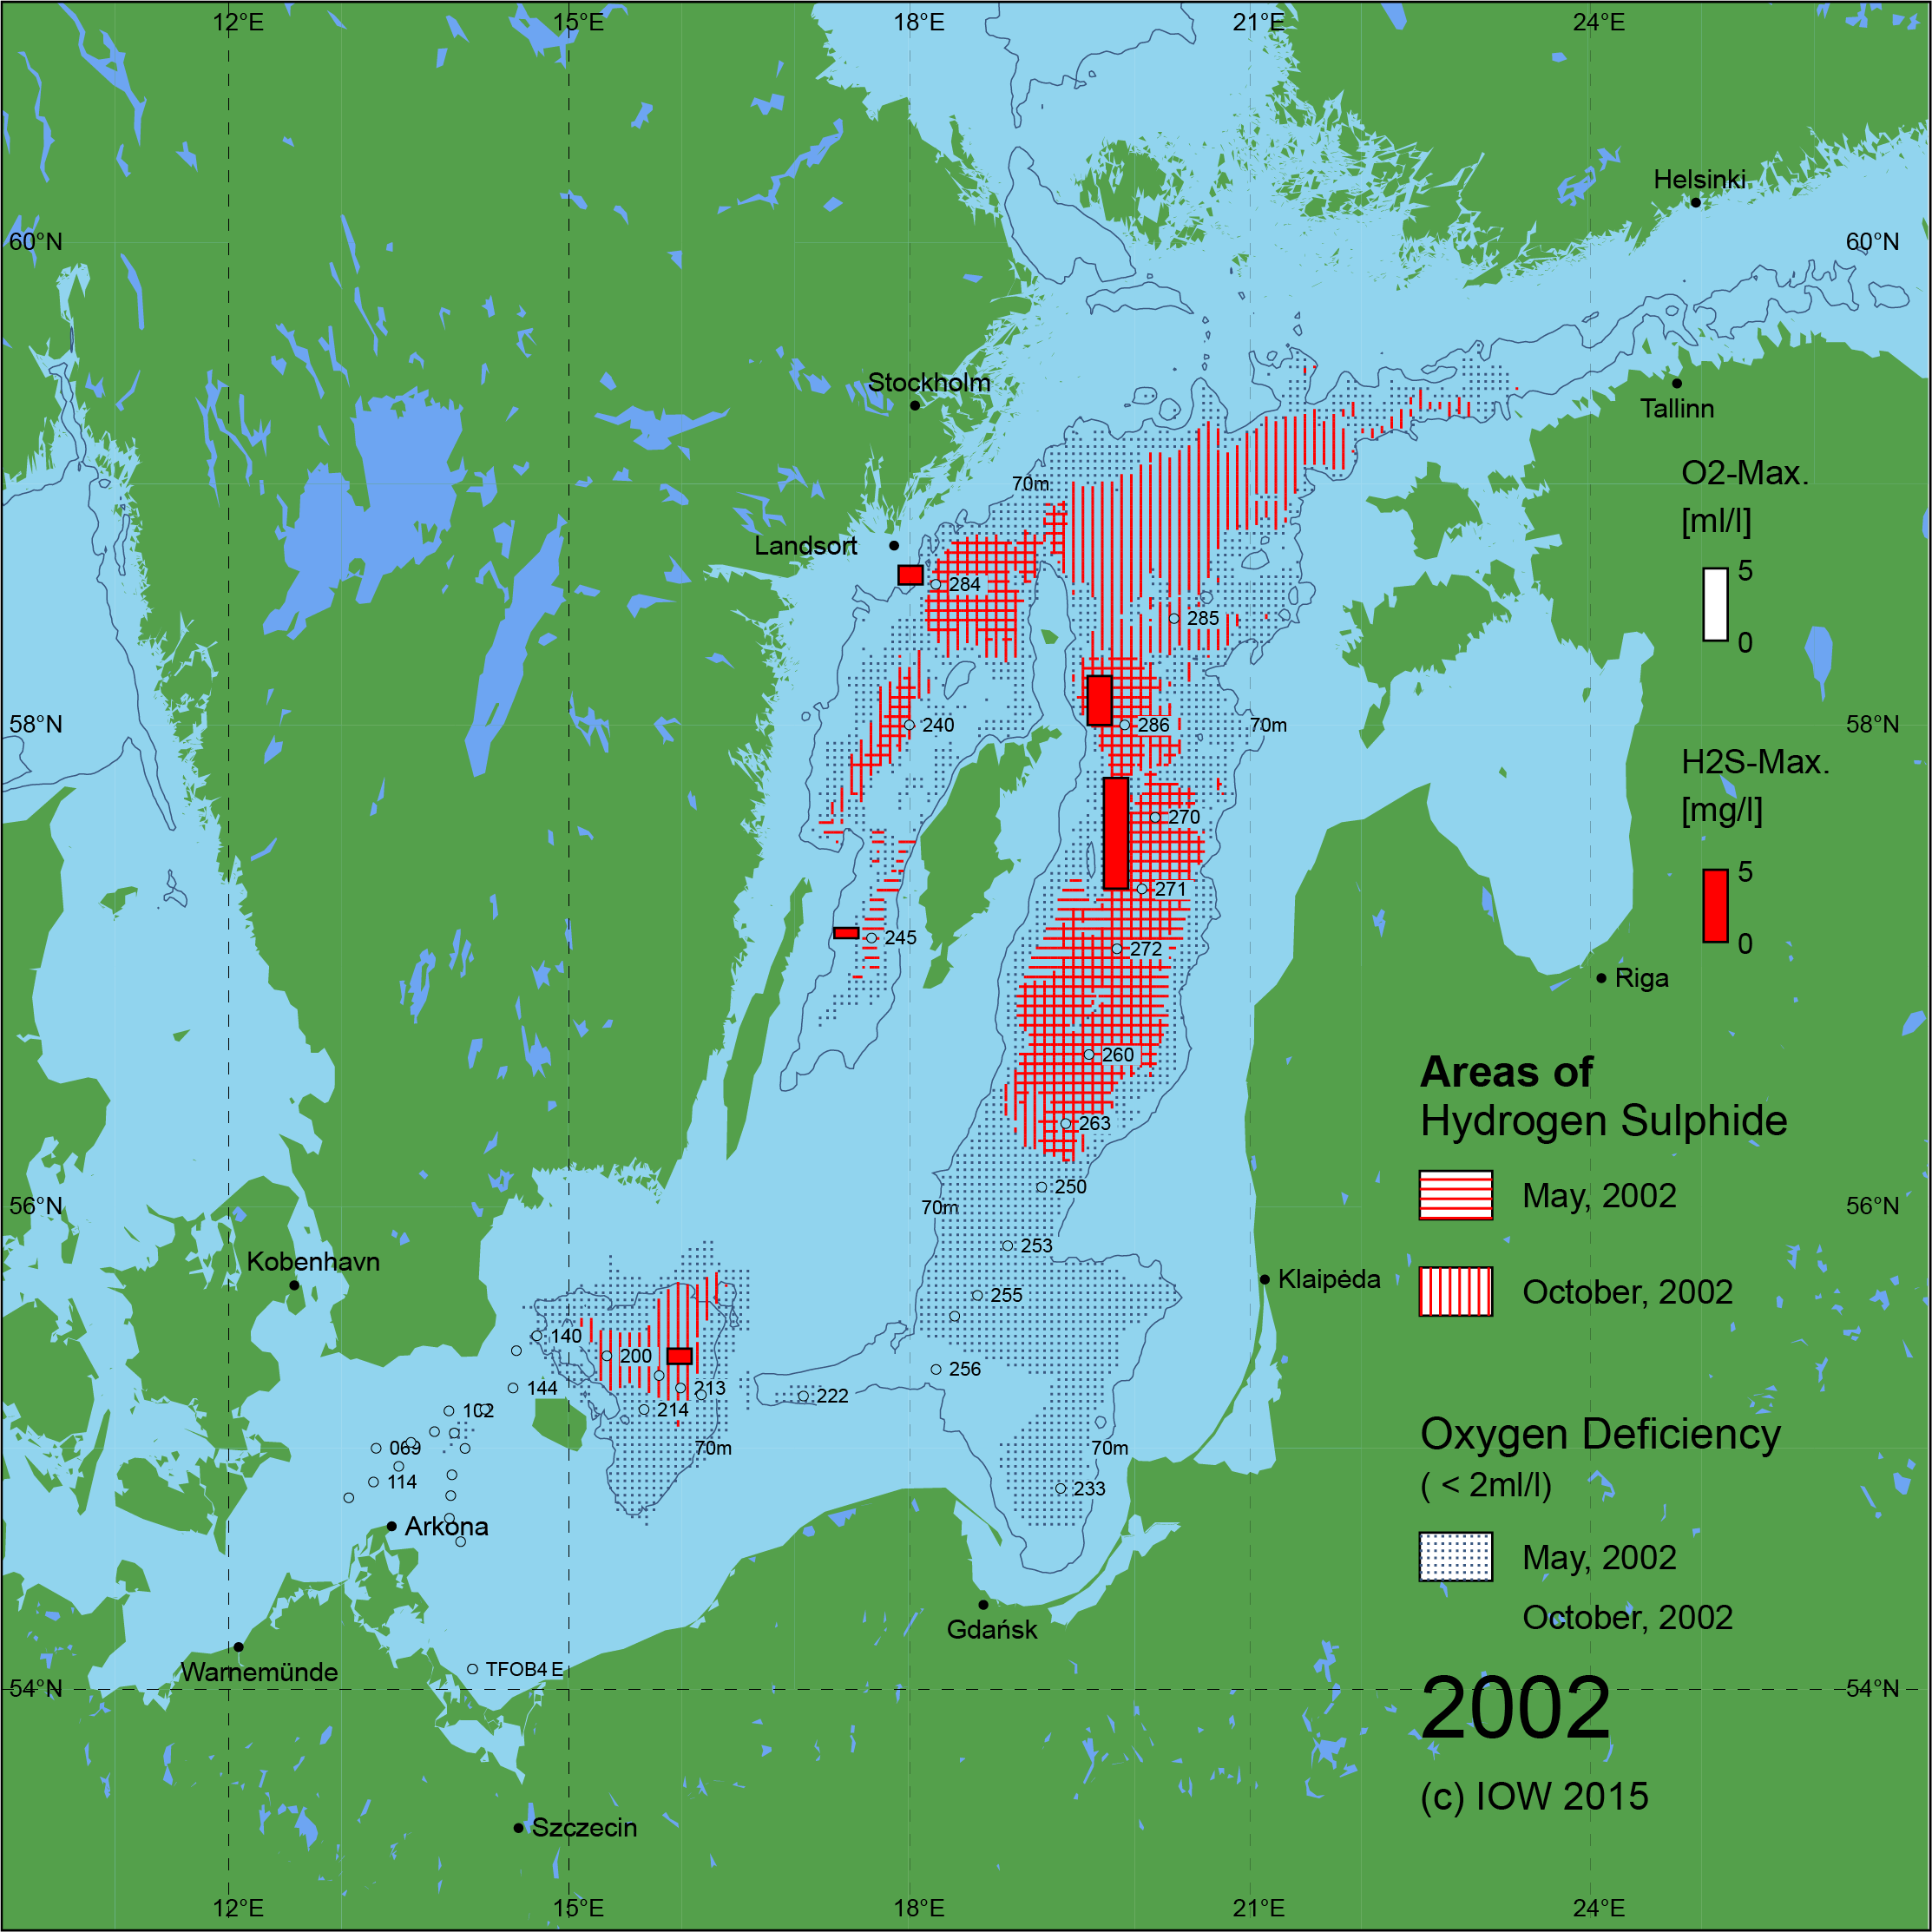 Sauerstoffarme und sauerstofffreie Gebiete in der Ostsee - 2002